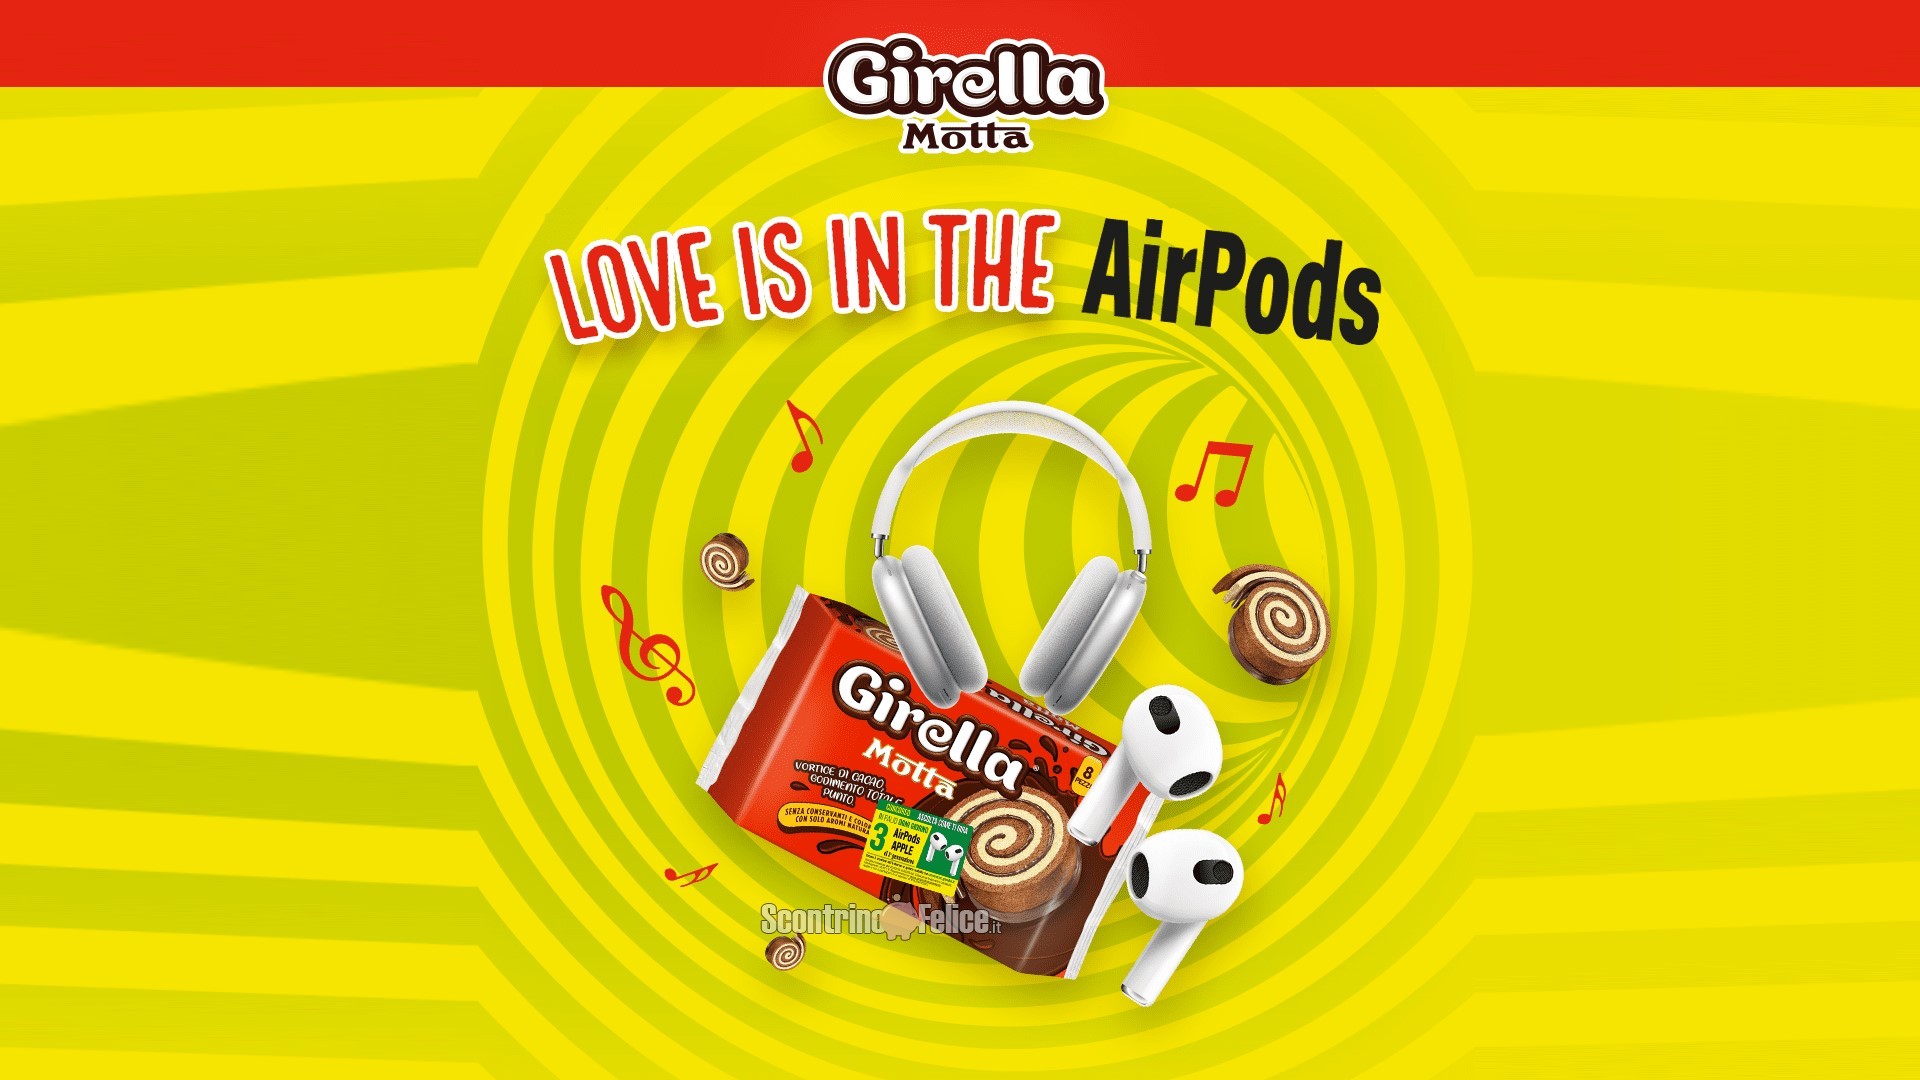 Concorso Girella “Ascolta come ti gira”: vinci AirPods Apple